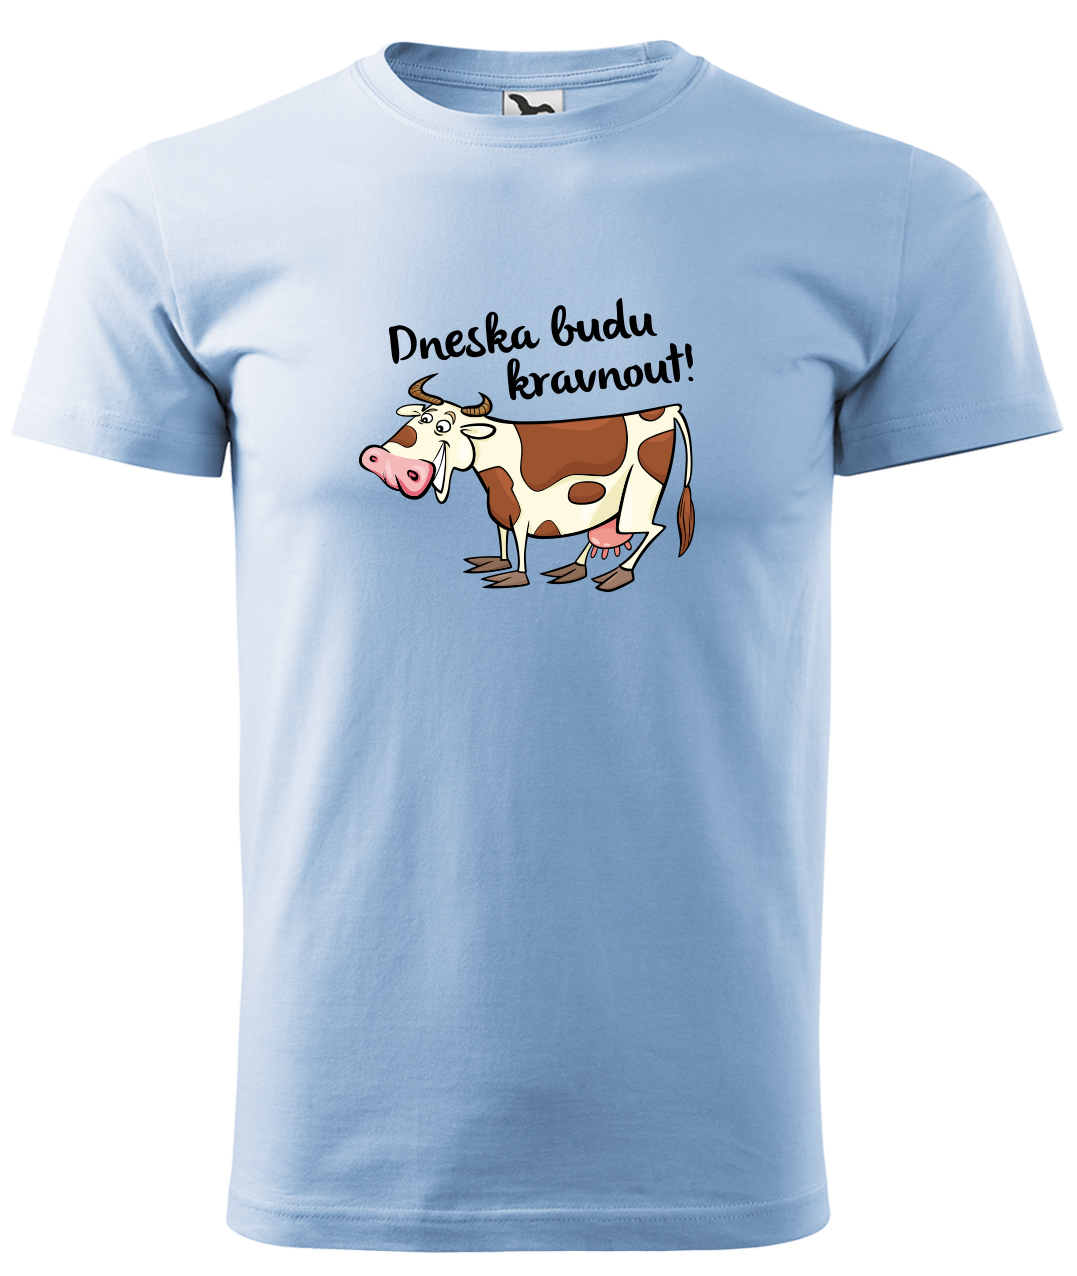 Dětské tričko s krávou - Dneska budu kravnout! Velikost: 4 roky / 110 cm, Barva: Nebesky modrá (15), Délka rukávu: Krátký rukáv